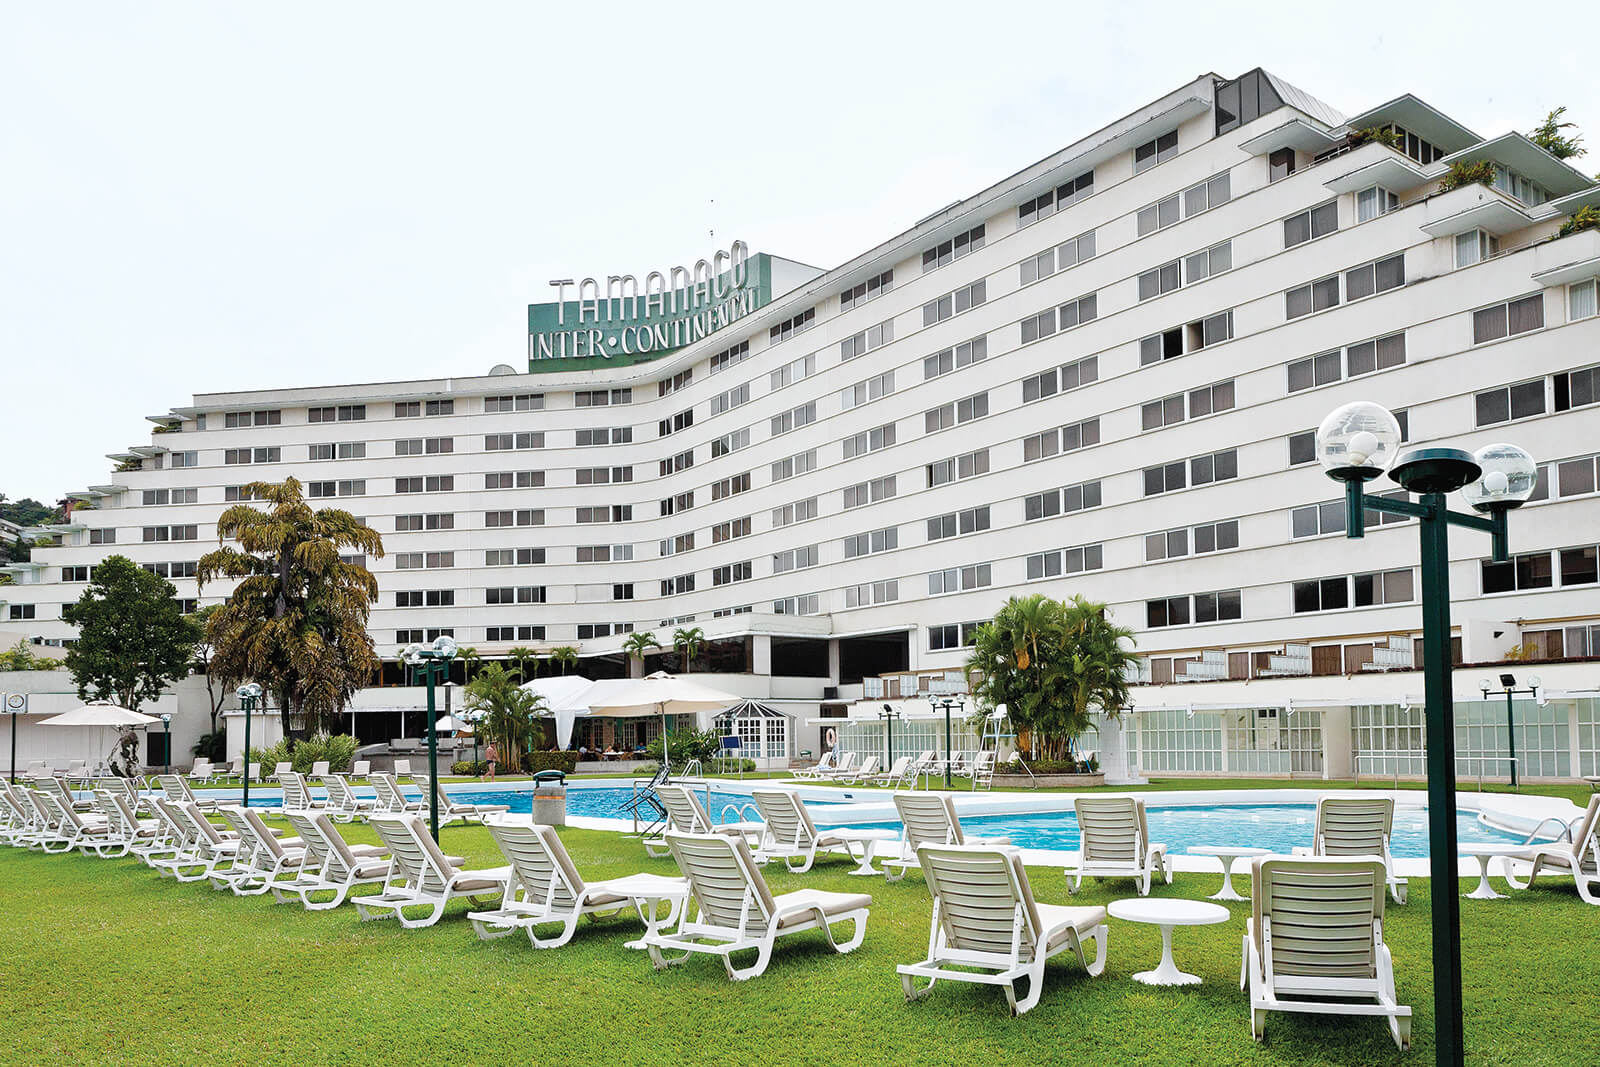 La franquicia InterContinental terminó su larga relación con el Hotel Tamanaco